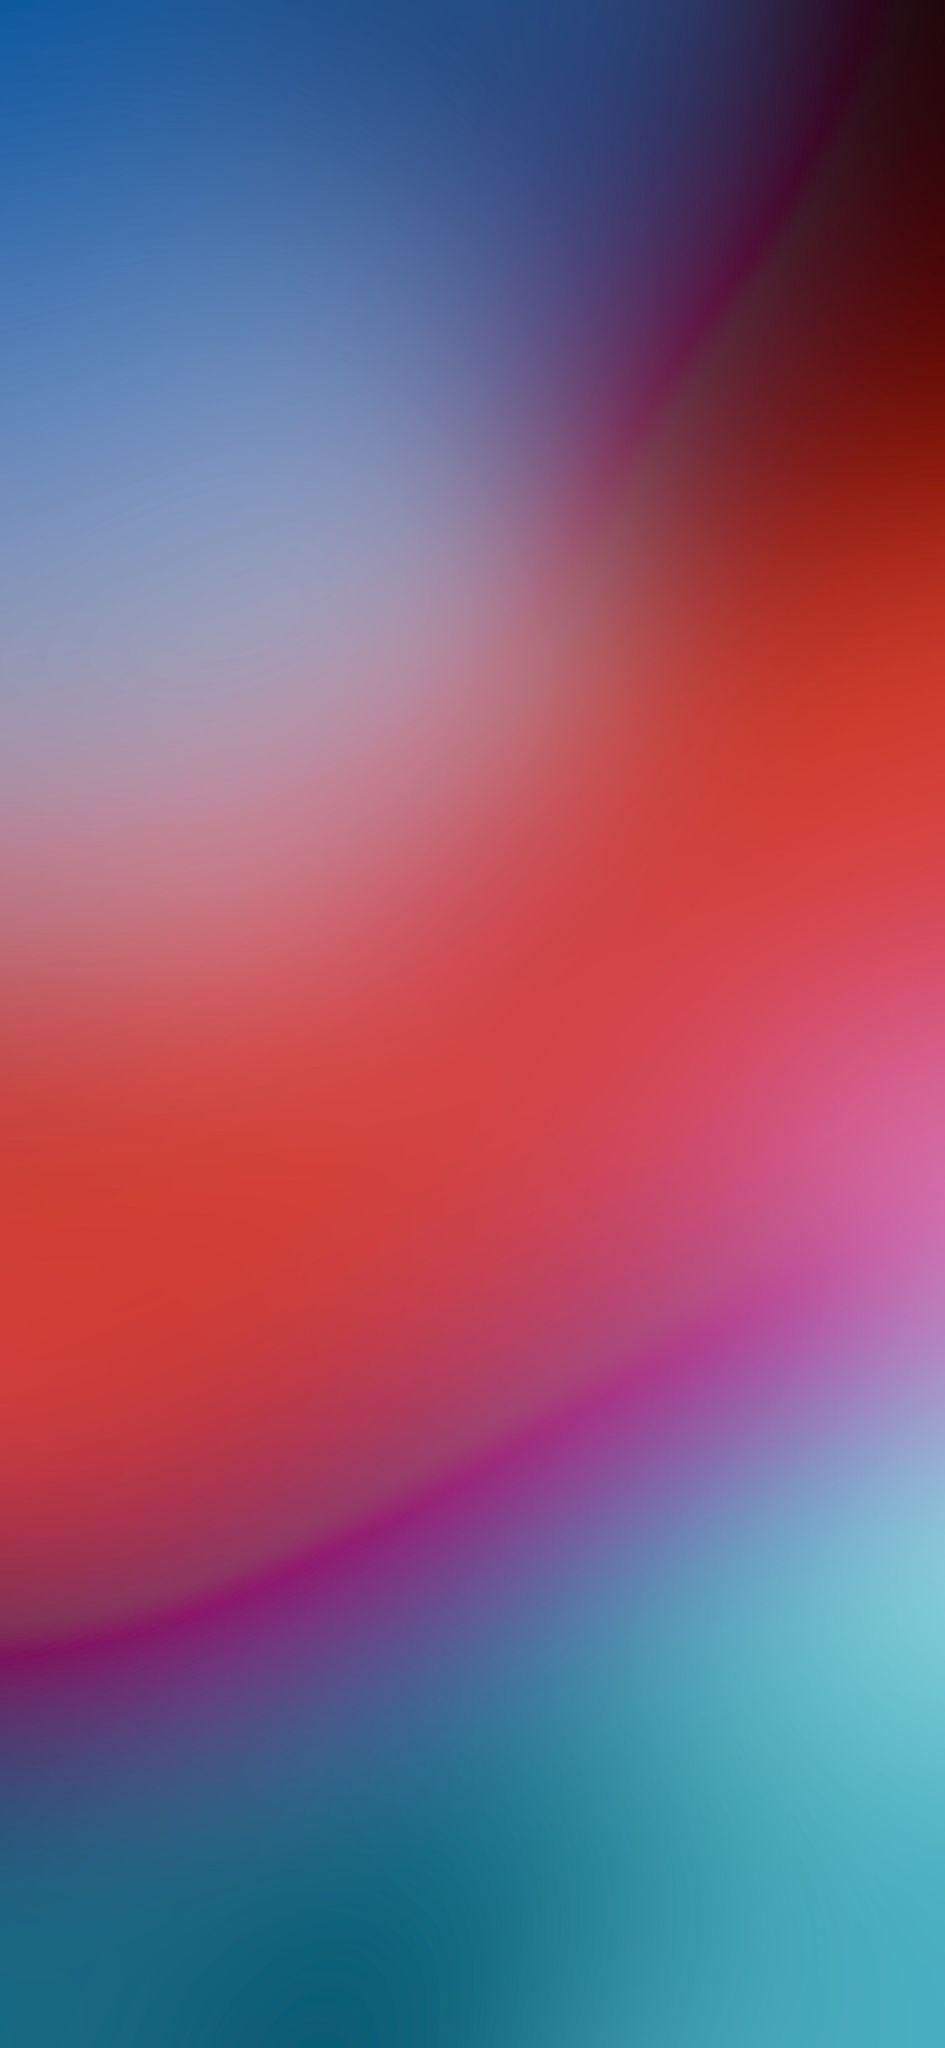 iPhone Blur Wallpapers mang đến cho bạn những bức ảnh nghệ thuật đầy sáng tạo và độc đáo. Hình ảnh sẽ trở nên thật khác biệt với phông nền mờ nhẹ, tạo nên một không gian độc đáo và sáng tạo cho điện thoại của bạn.